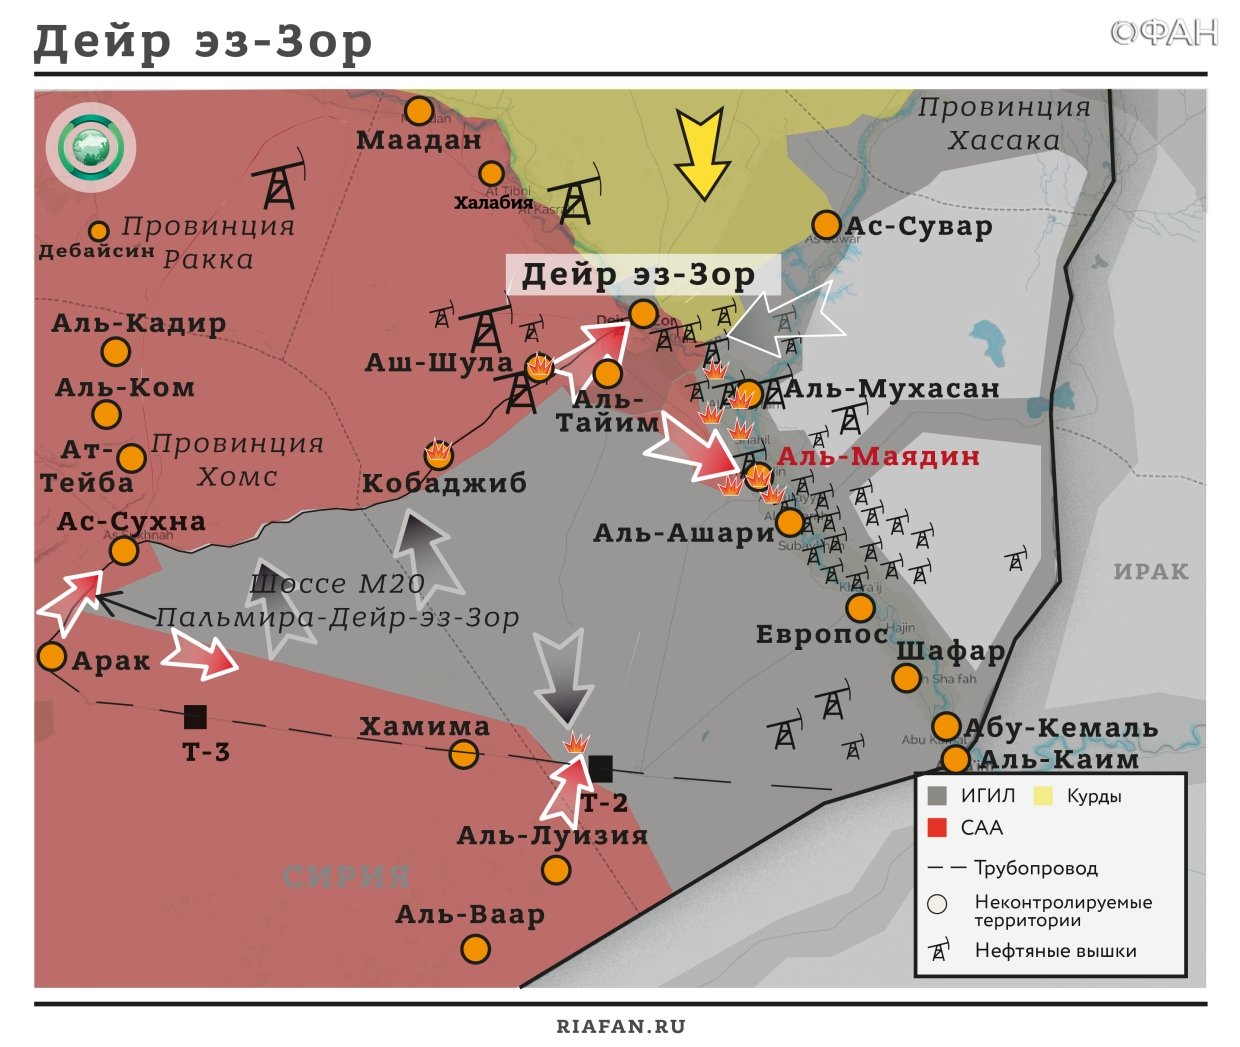 Сирия и ВКС РФ освободили ставший столицей ИГ* Аль-Маядин : о значении и перспективах операции на юго-востоке Дейр эз-Зора